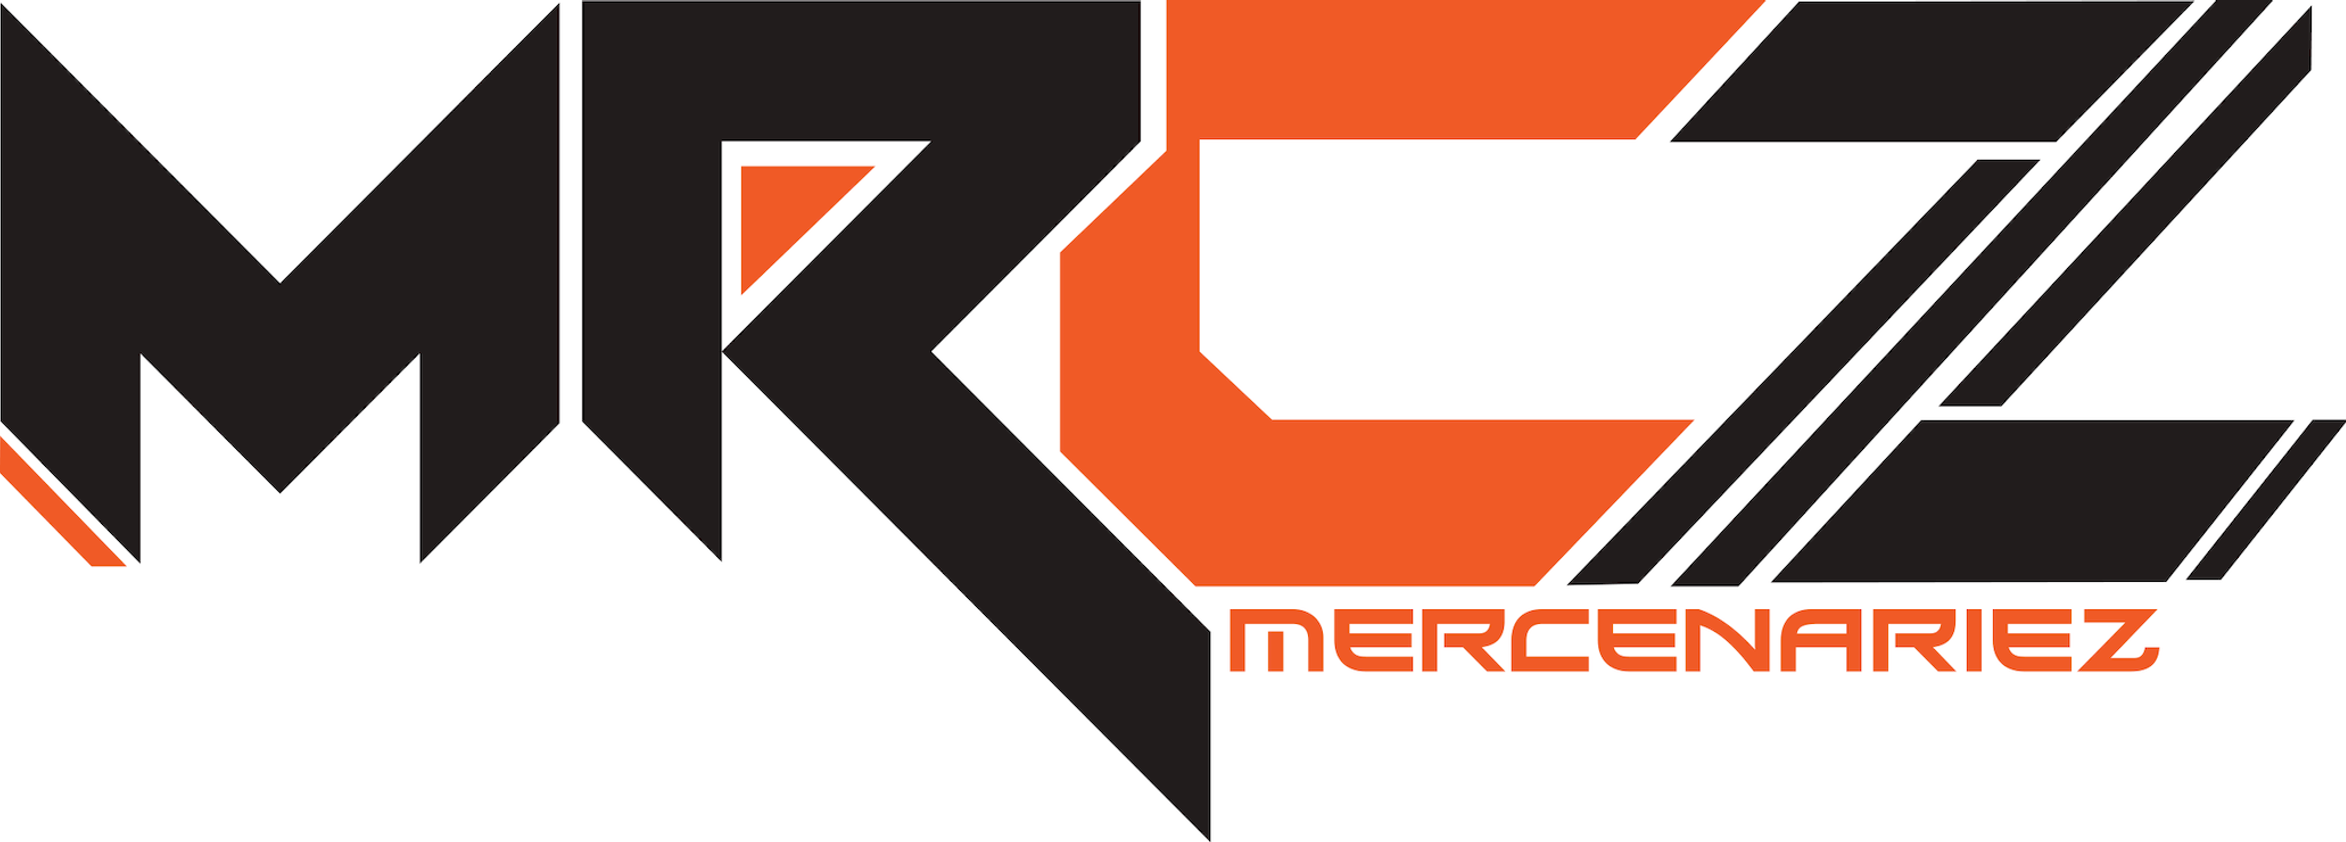 파일:MercenarieZ_logo.png